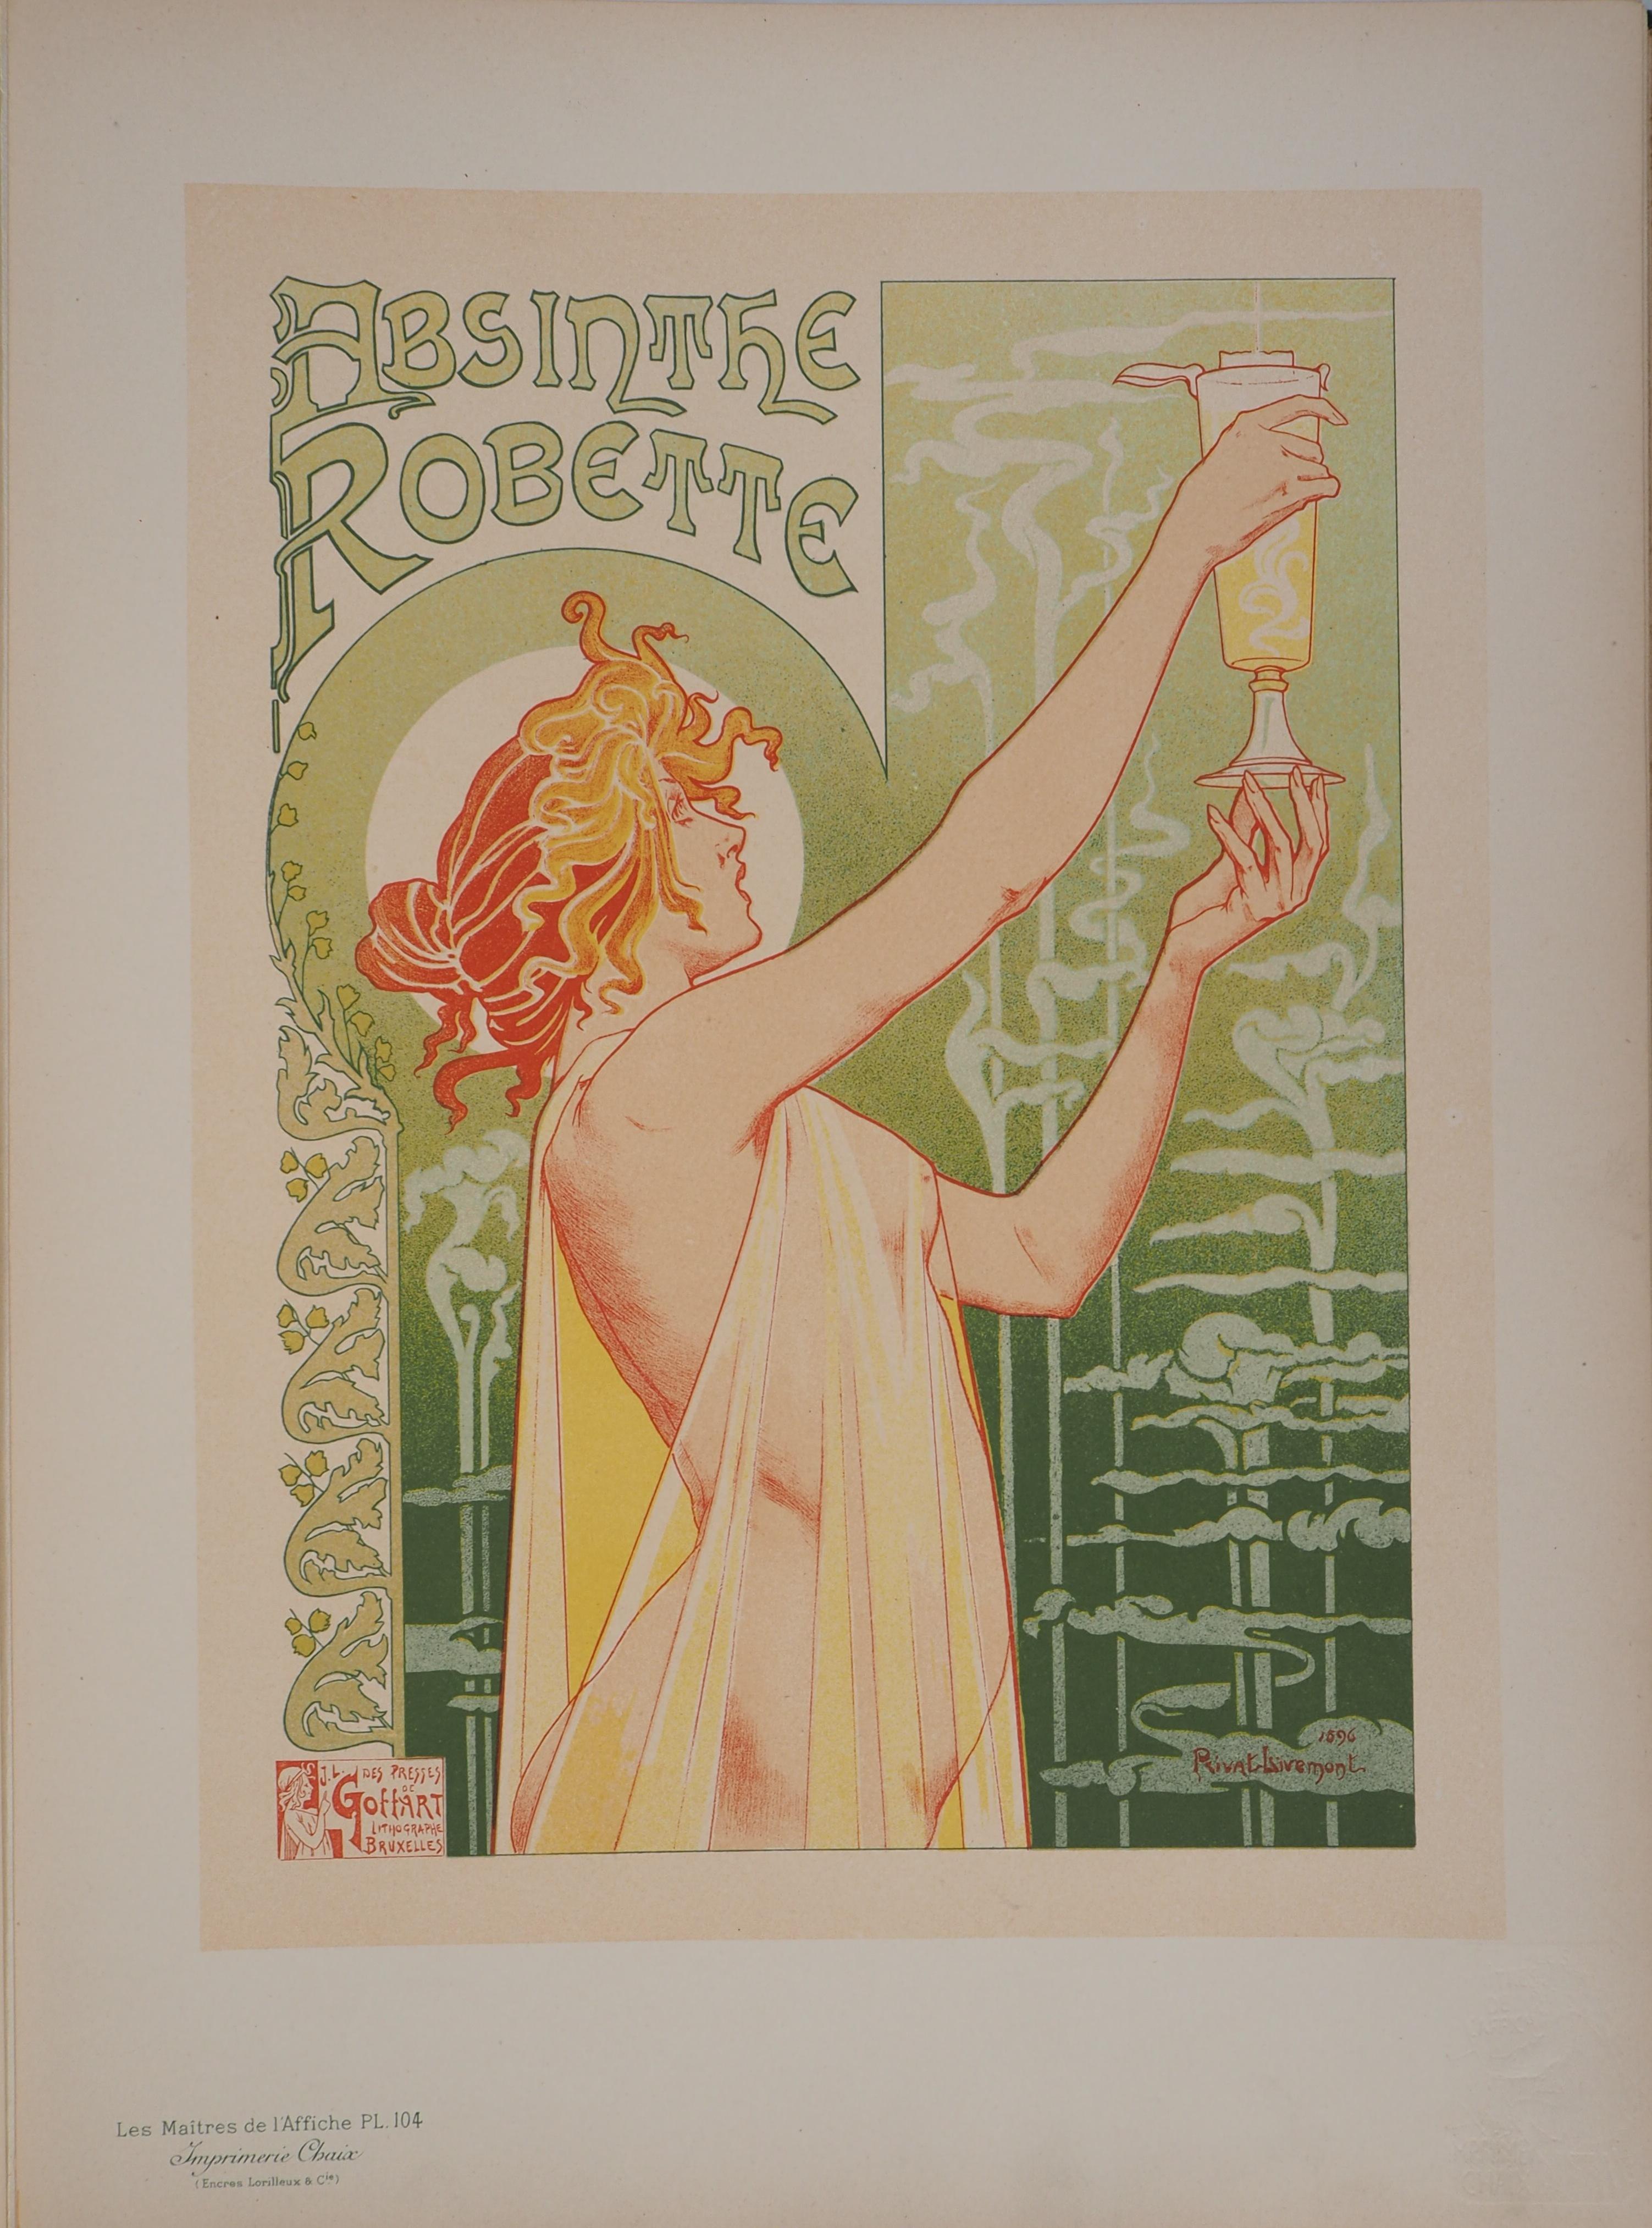 Absinthe Robette - Lithograph (Les Maîtres de l'Affiche), Imprimerie Chaix 1897 - Print by Henri PRIVAT-LIVEMONT